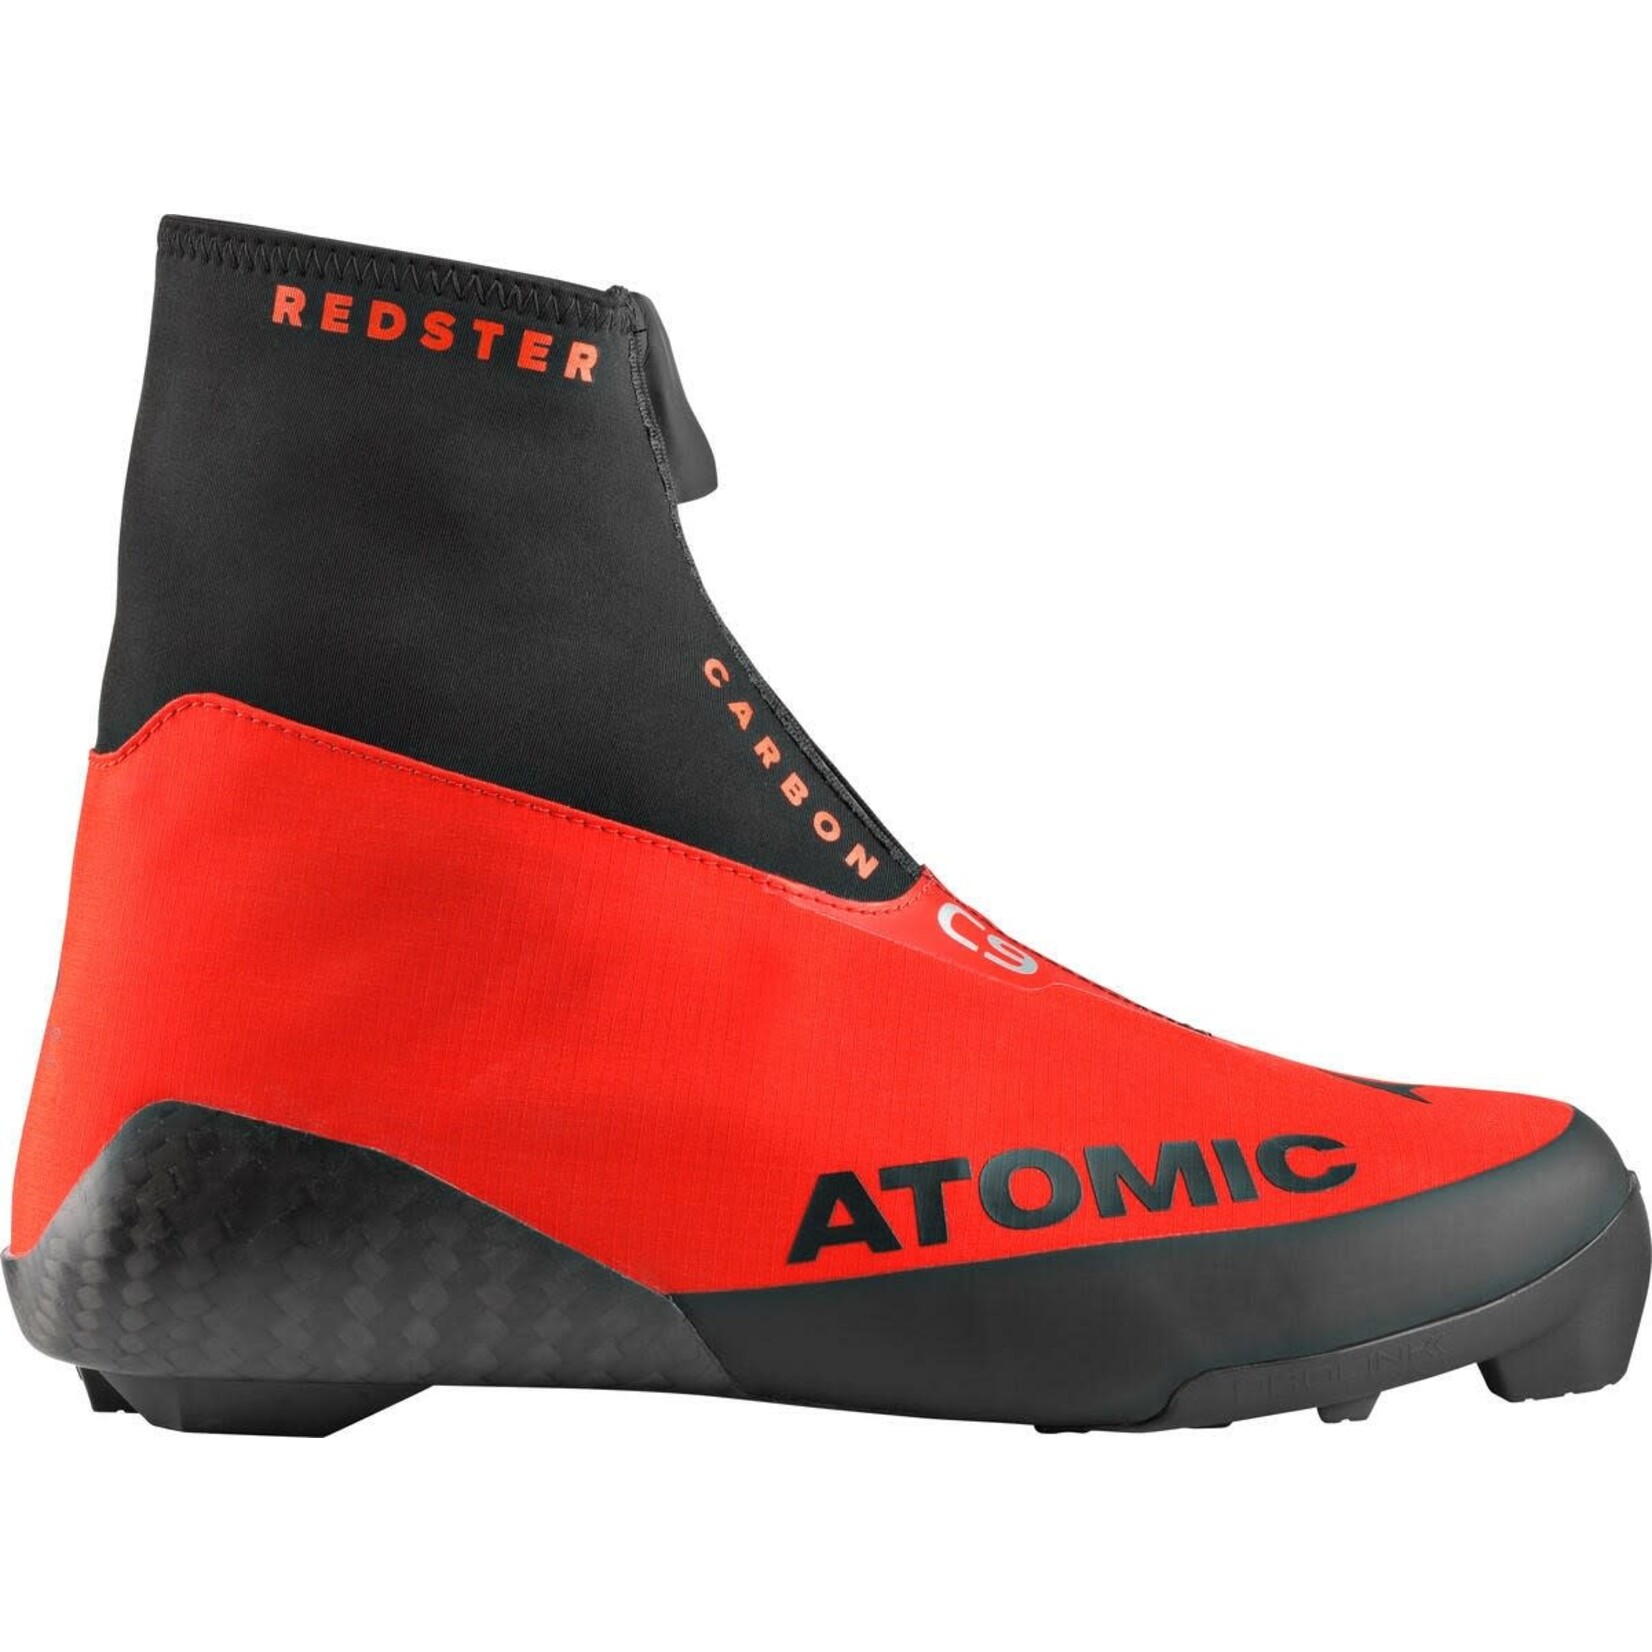 Atomic Redster C9 Carbon d'Atomic (Bottes de ski de fond classique)